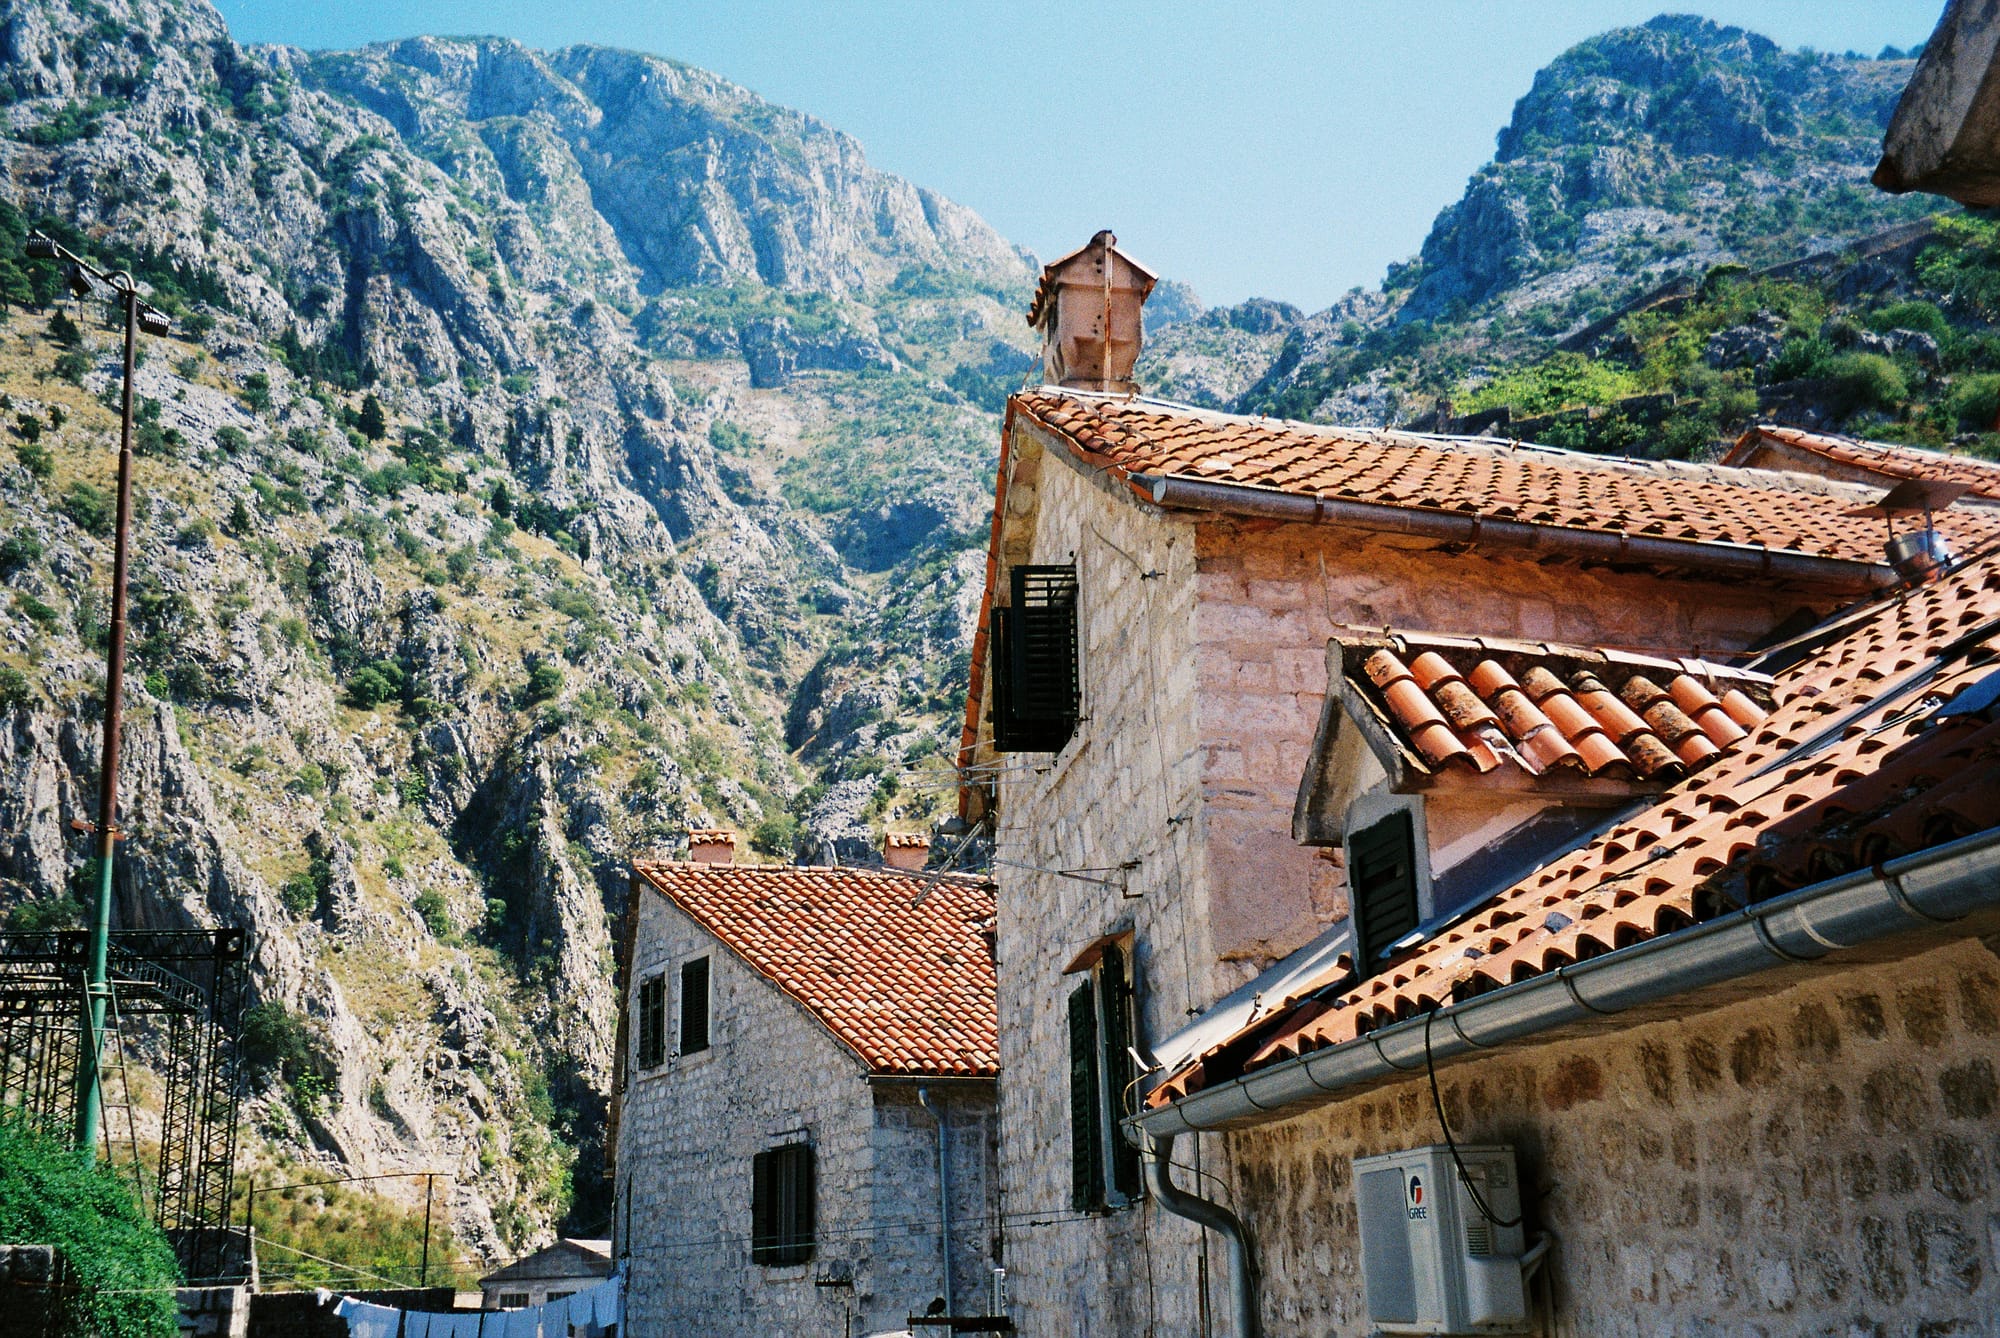 Tiled rooftops in Kotor, Montenegro